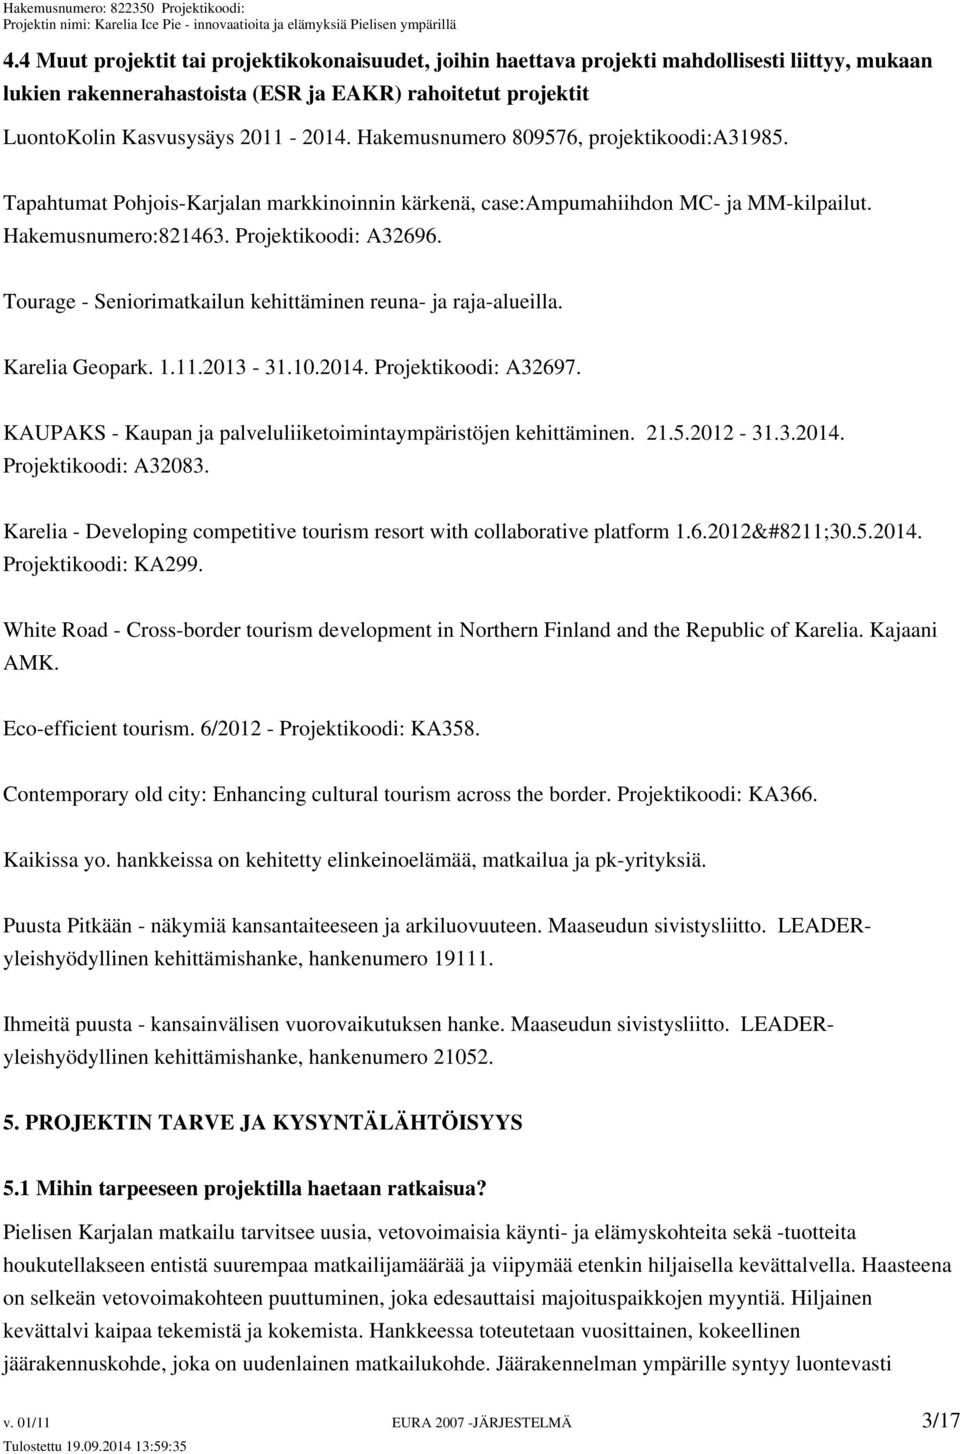 Tourage - Seniorimatkailun kehittäminen reuna- ja raja-alueilla. Karelia Geopark. 1.11.2013-31.10.2014. Projektikoodi: A32697. KAUPAKS - Kaupan ja palveluliiketoimintaympäristöjen kehittäminen. 21.5.